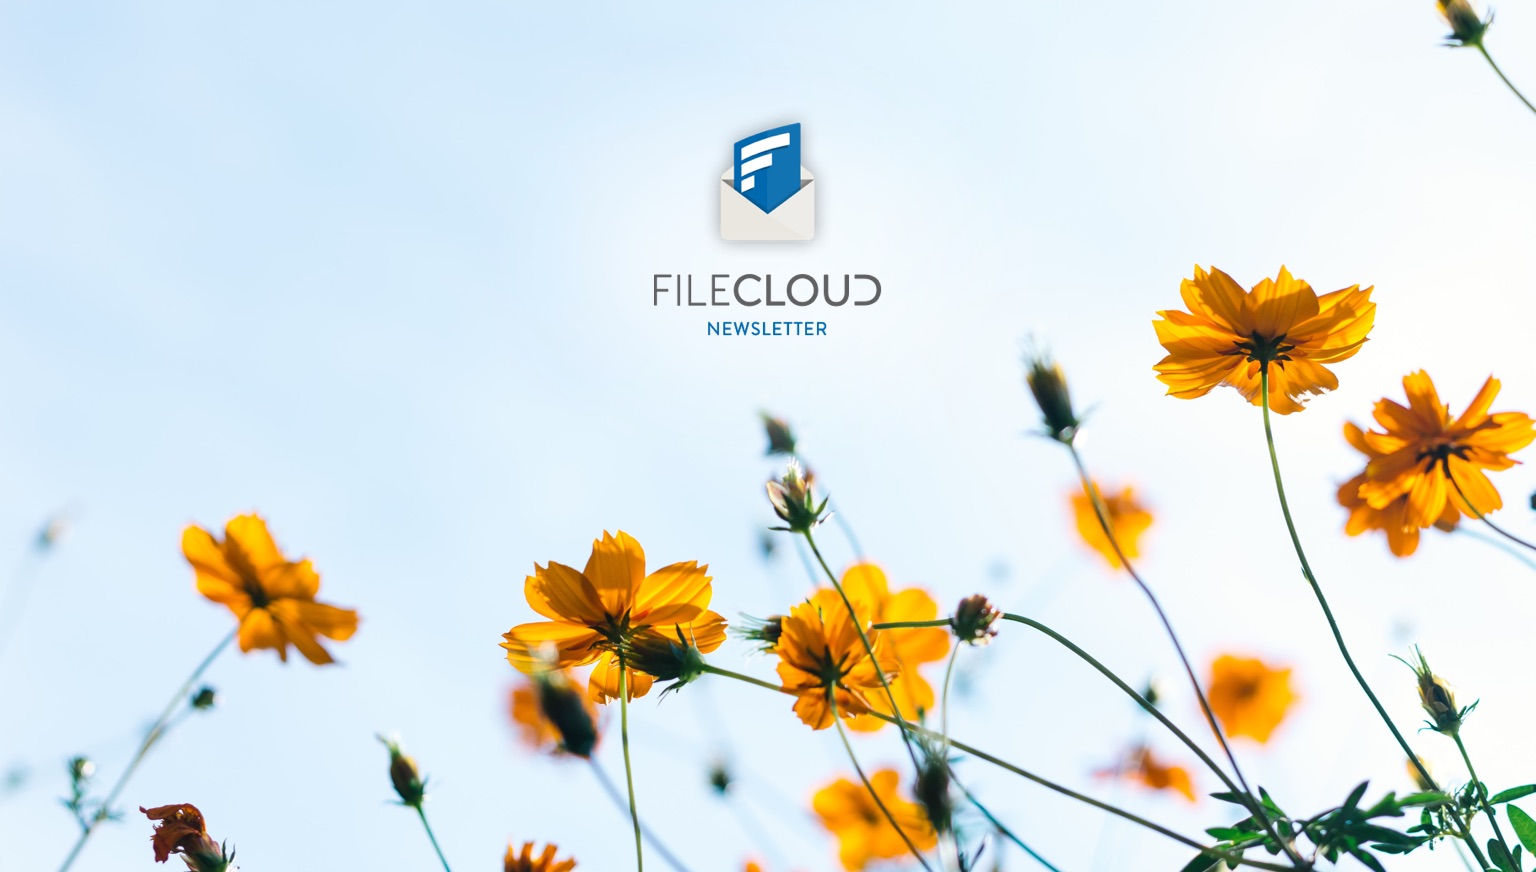 FileCloud Newsletter